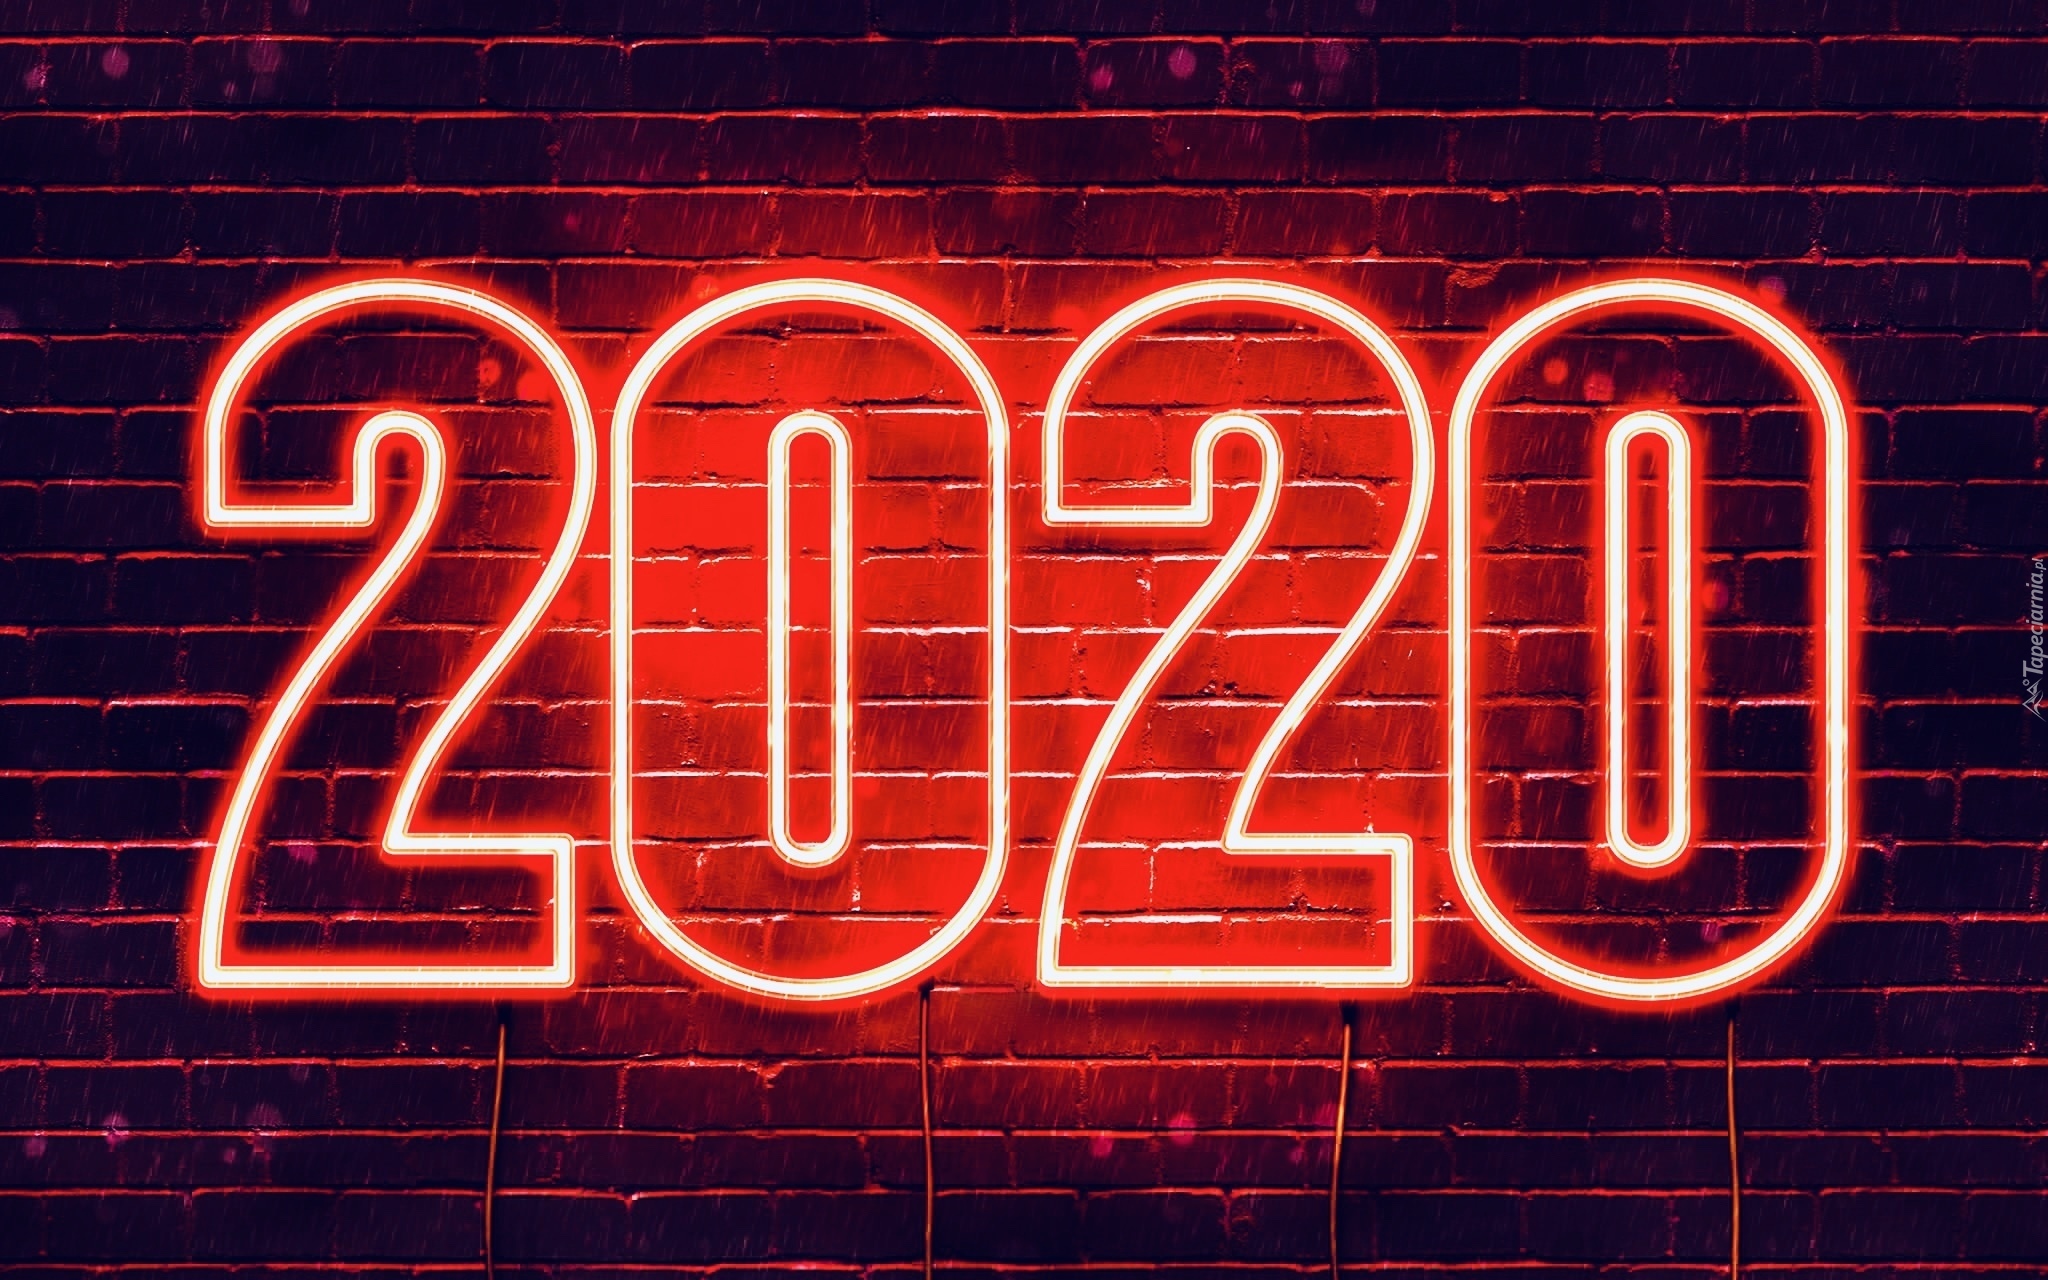 Nowy Rok, 2020, Mur, Cegły, Neon